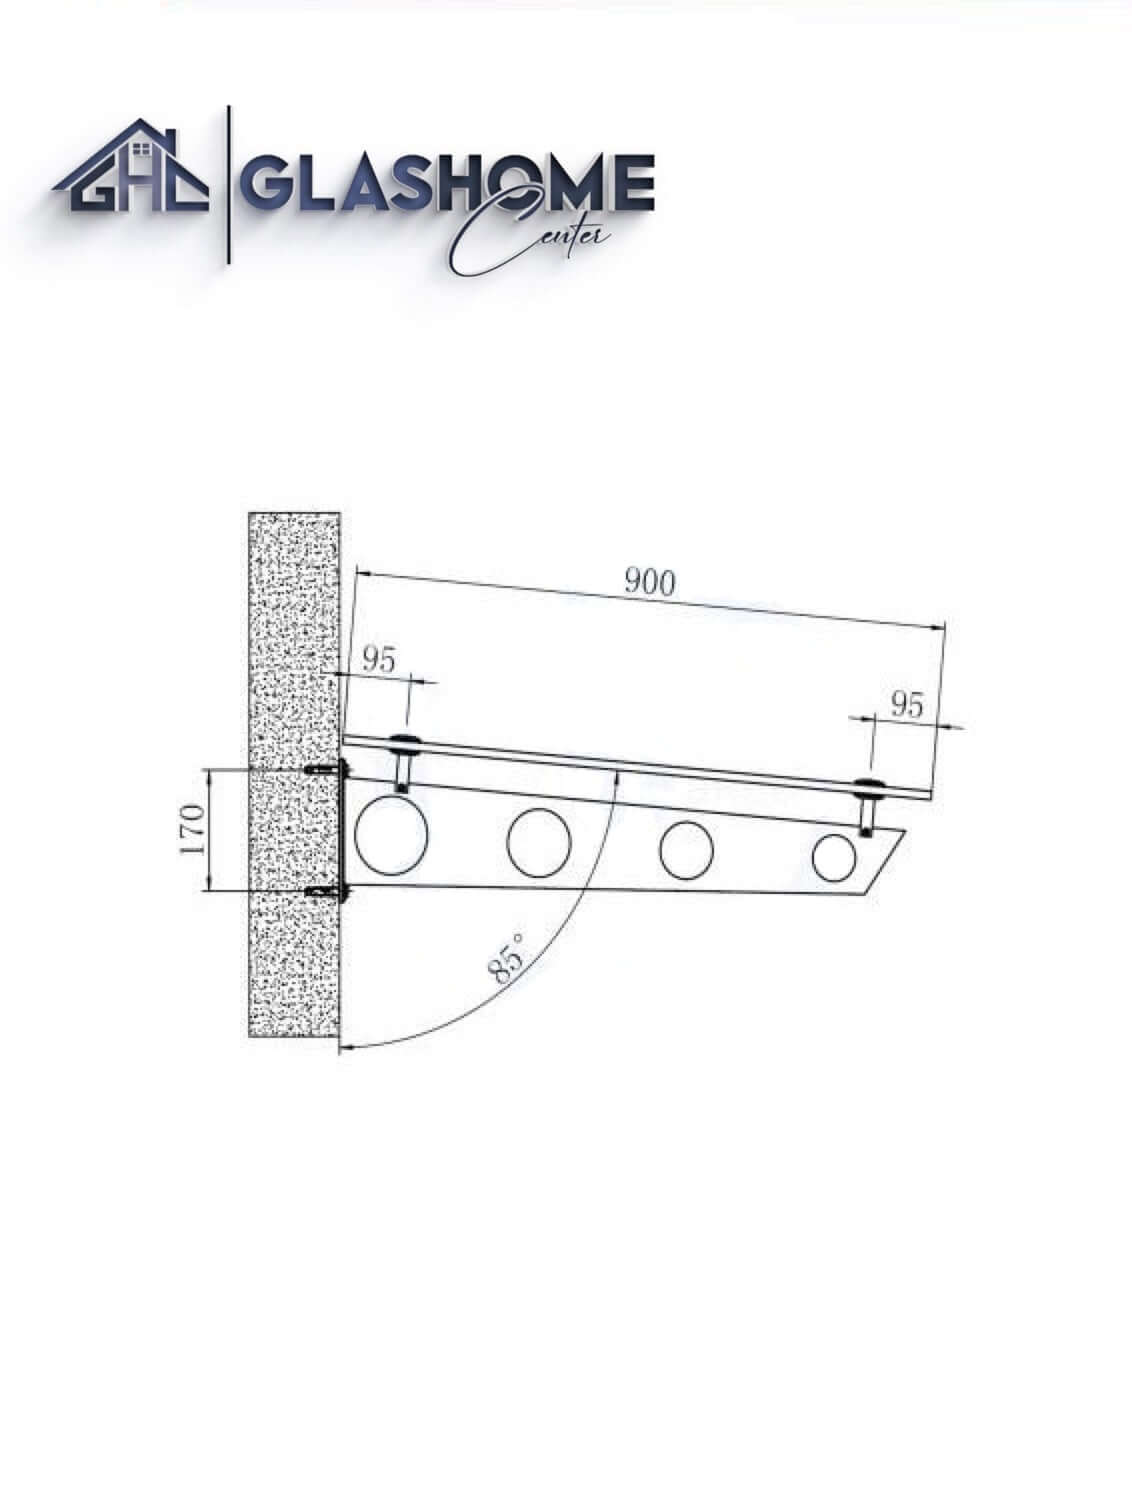 GlasHomeCenter - Glasvordach - Grauglas - 250x90cm - 13,1mm VSG - incl. 3 varianti Edelstahlhalterungen nere "Stoccolma"